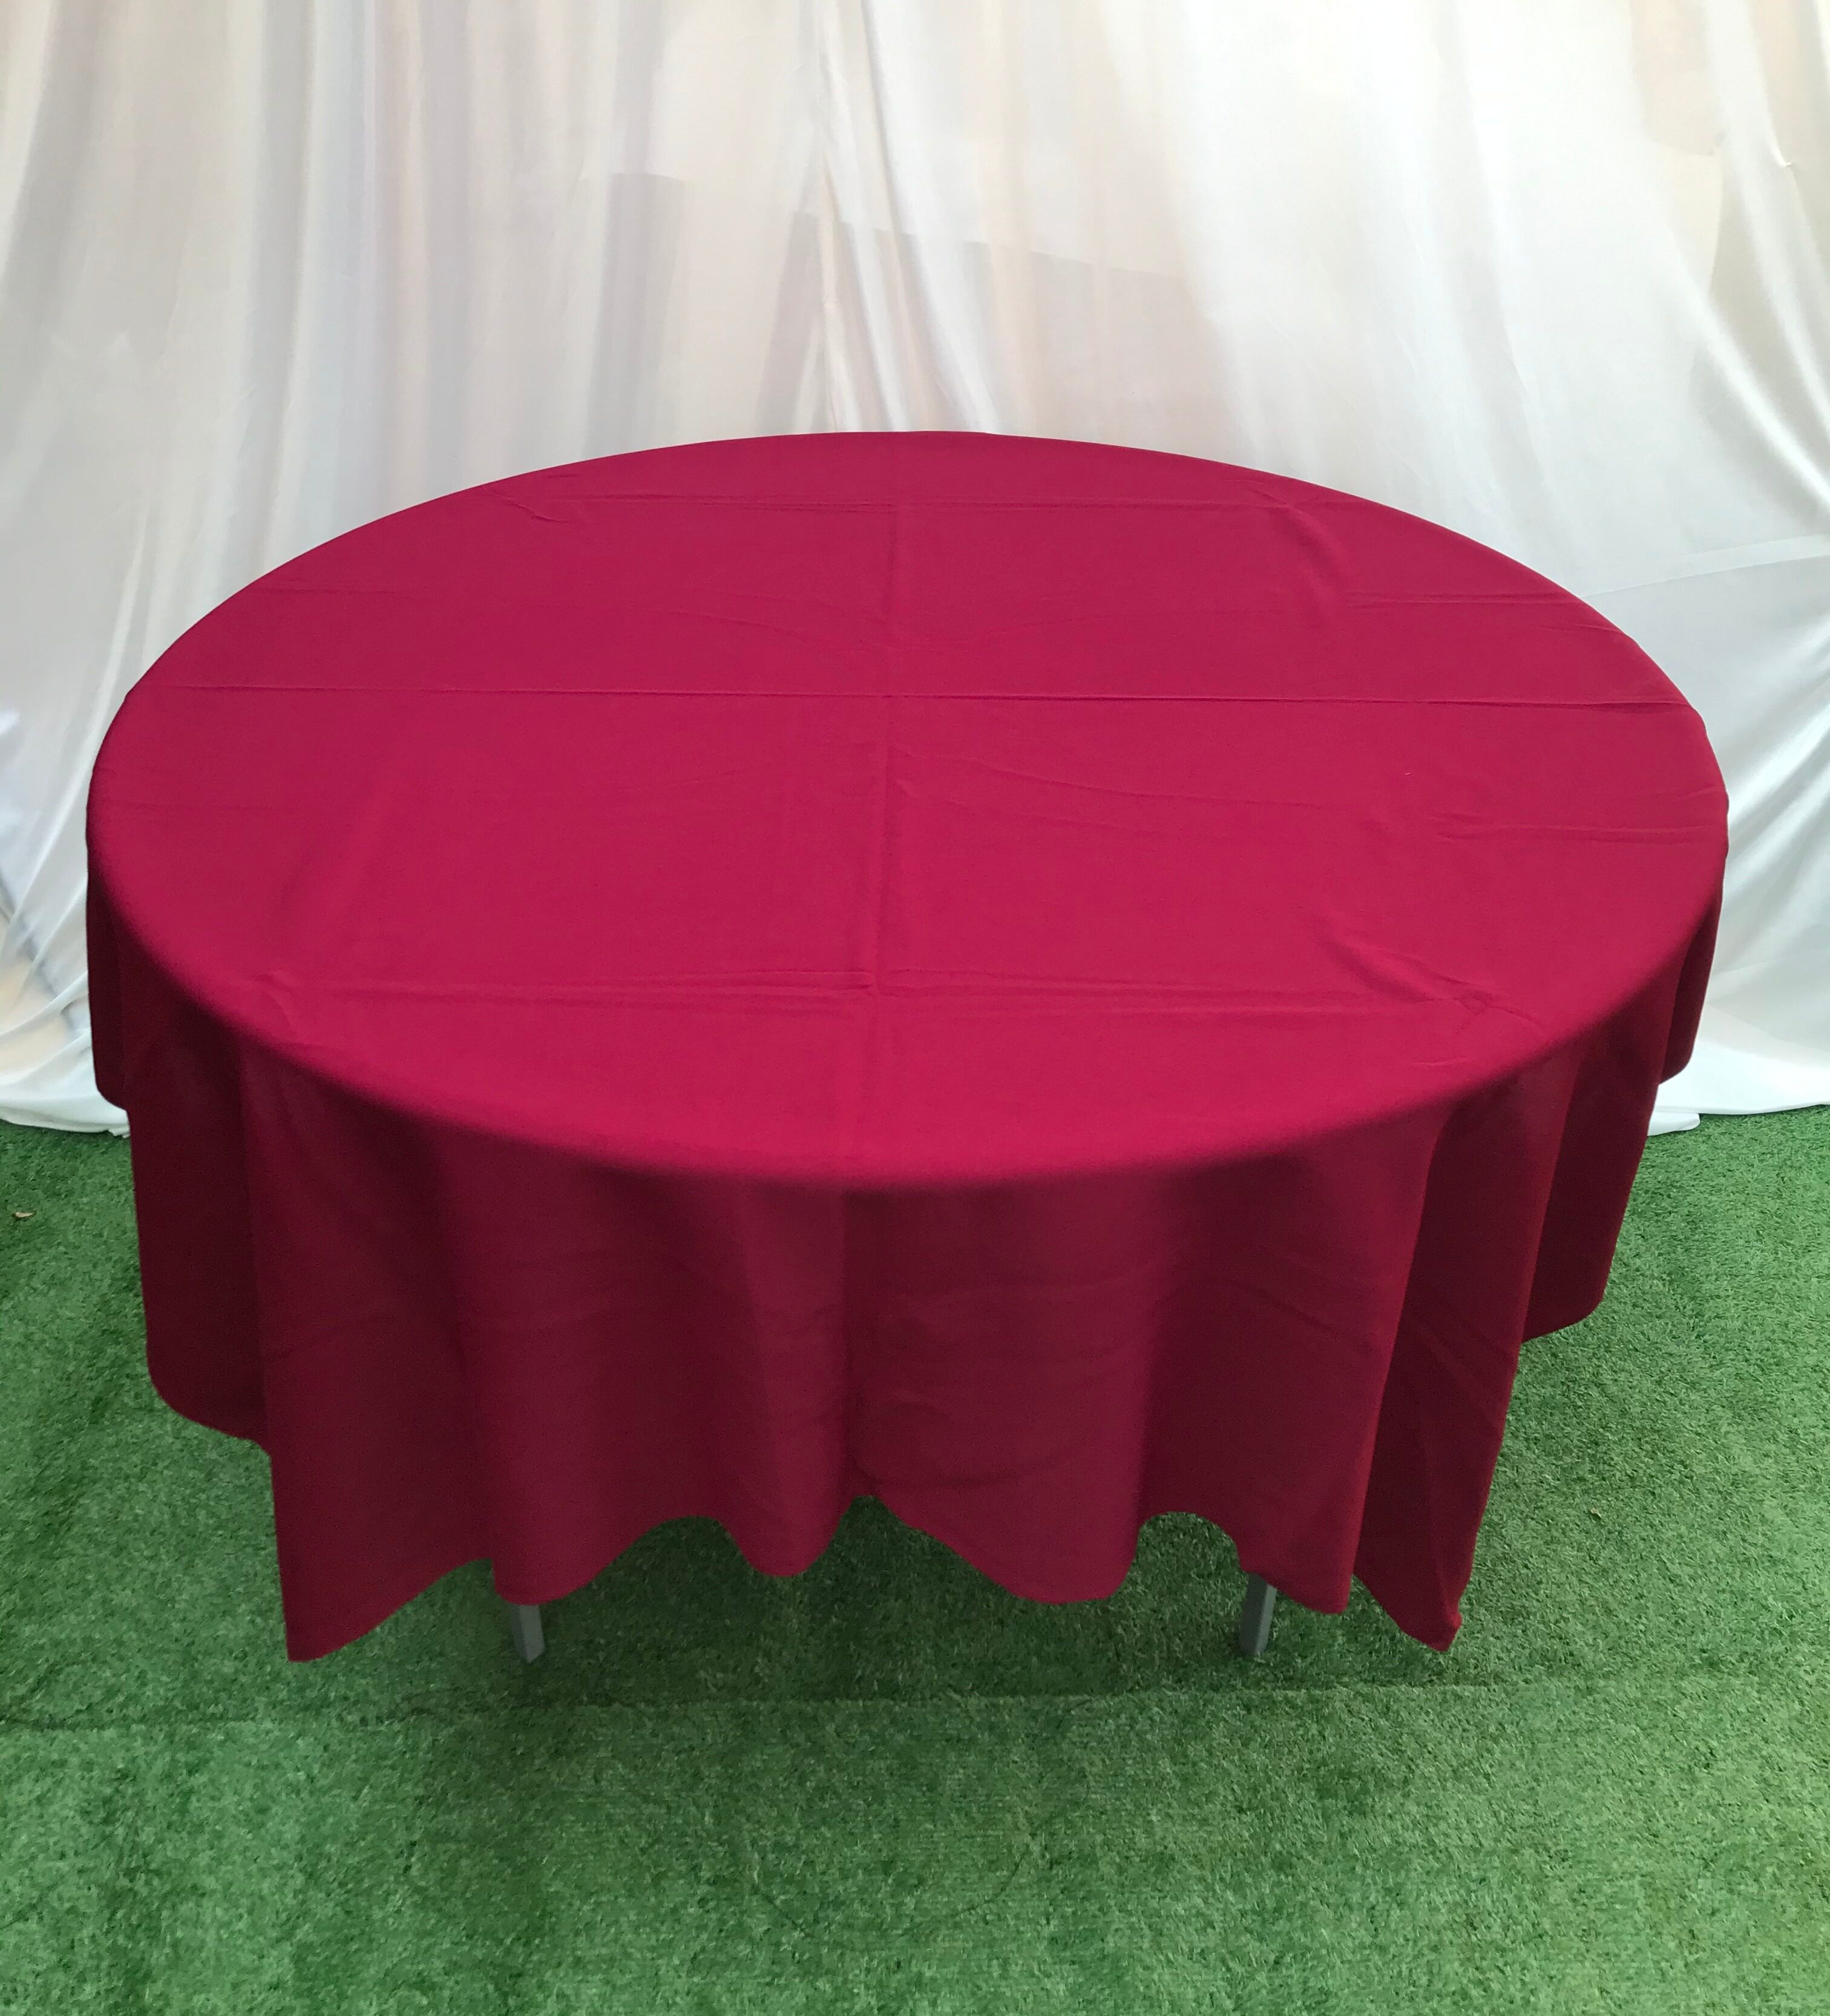 ผ้าปูโต๊ะ ผ้าปูโต๊ะสี่เหลี่ยม ขนาด 155x175 เซนติเมตร (±5) ผ้ามองตากูร์ ผ้าปูโต๊ะจีน